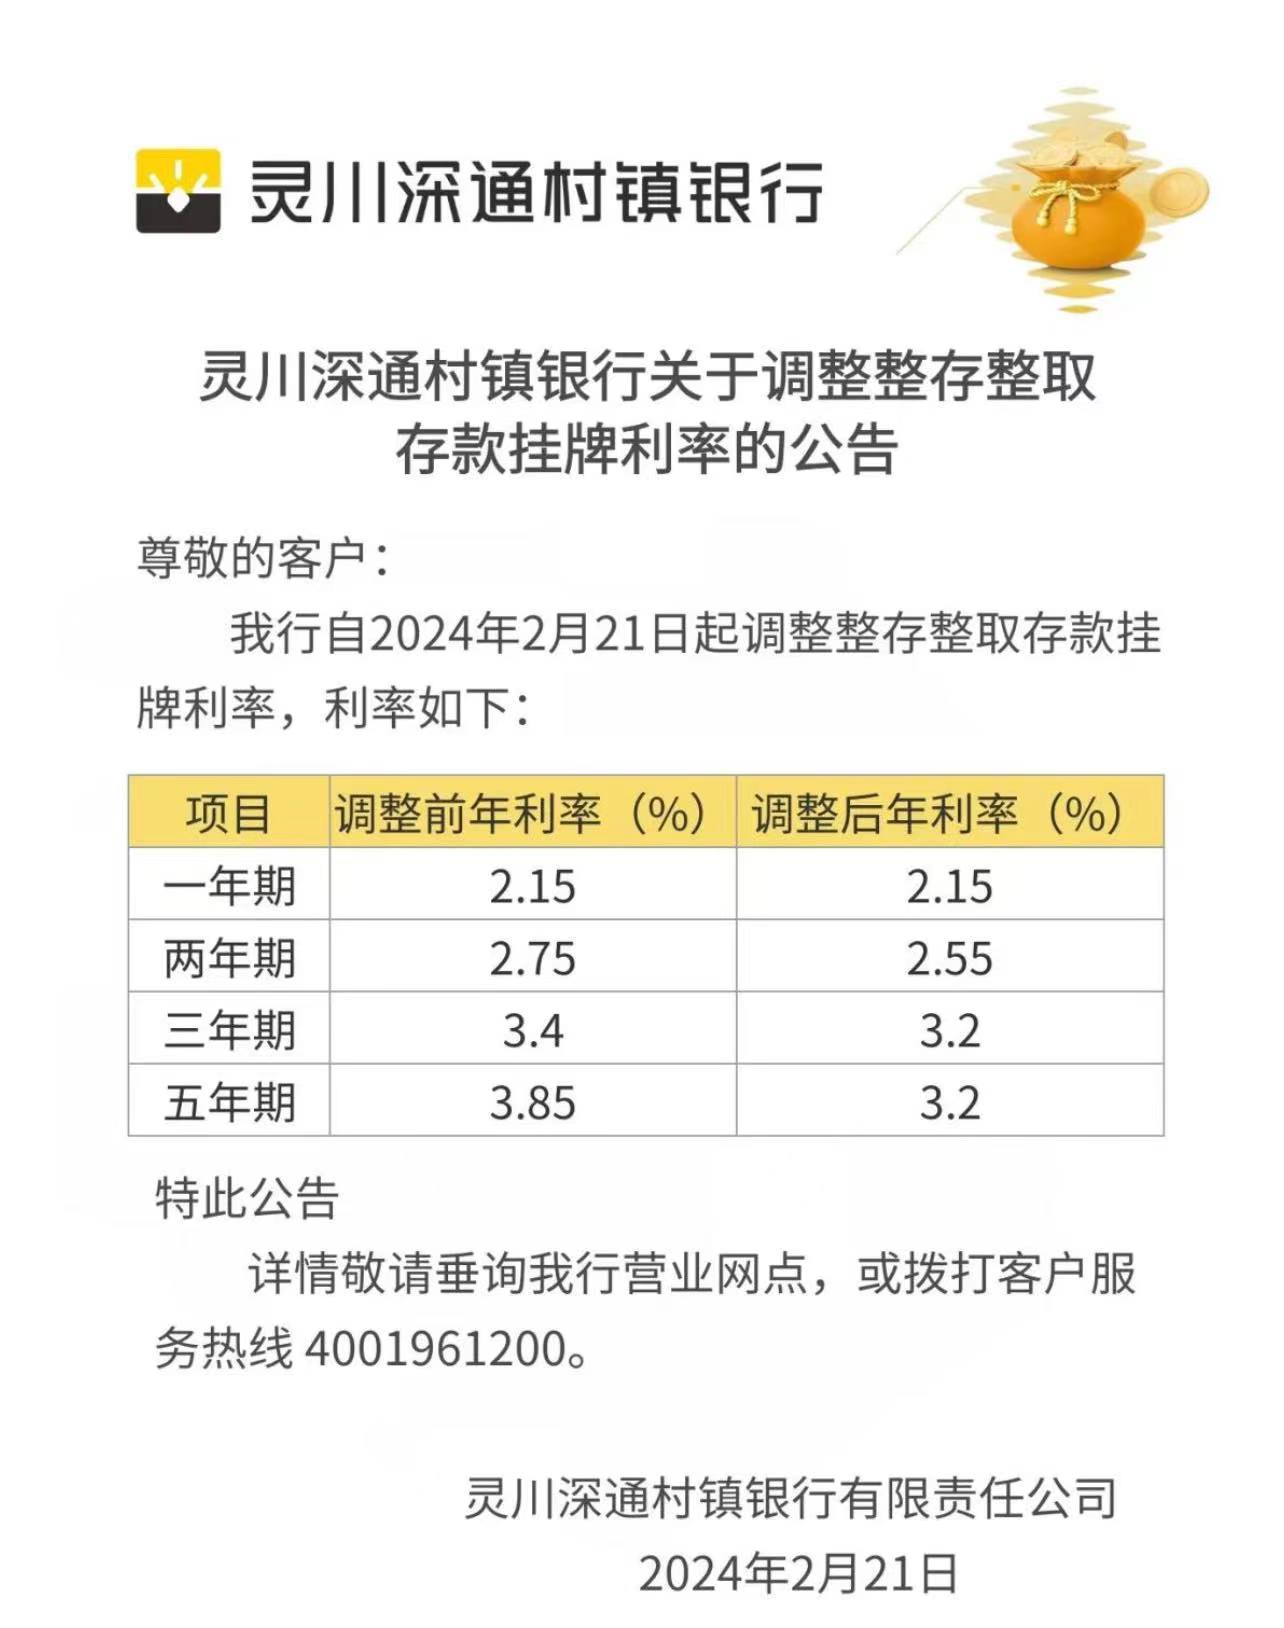 灵川深通村镇银行官方公众号截图。存款三年期利率由3.4%调整至3.2%	，利率</p><p style=